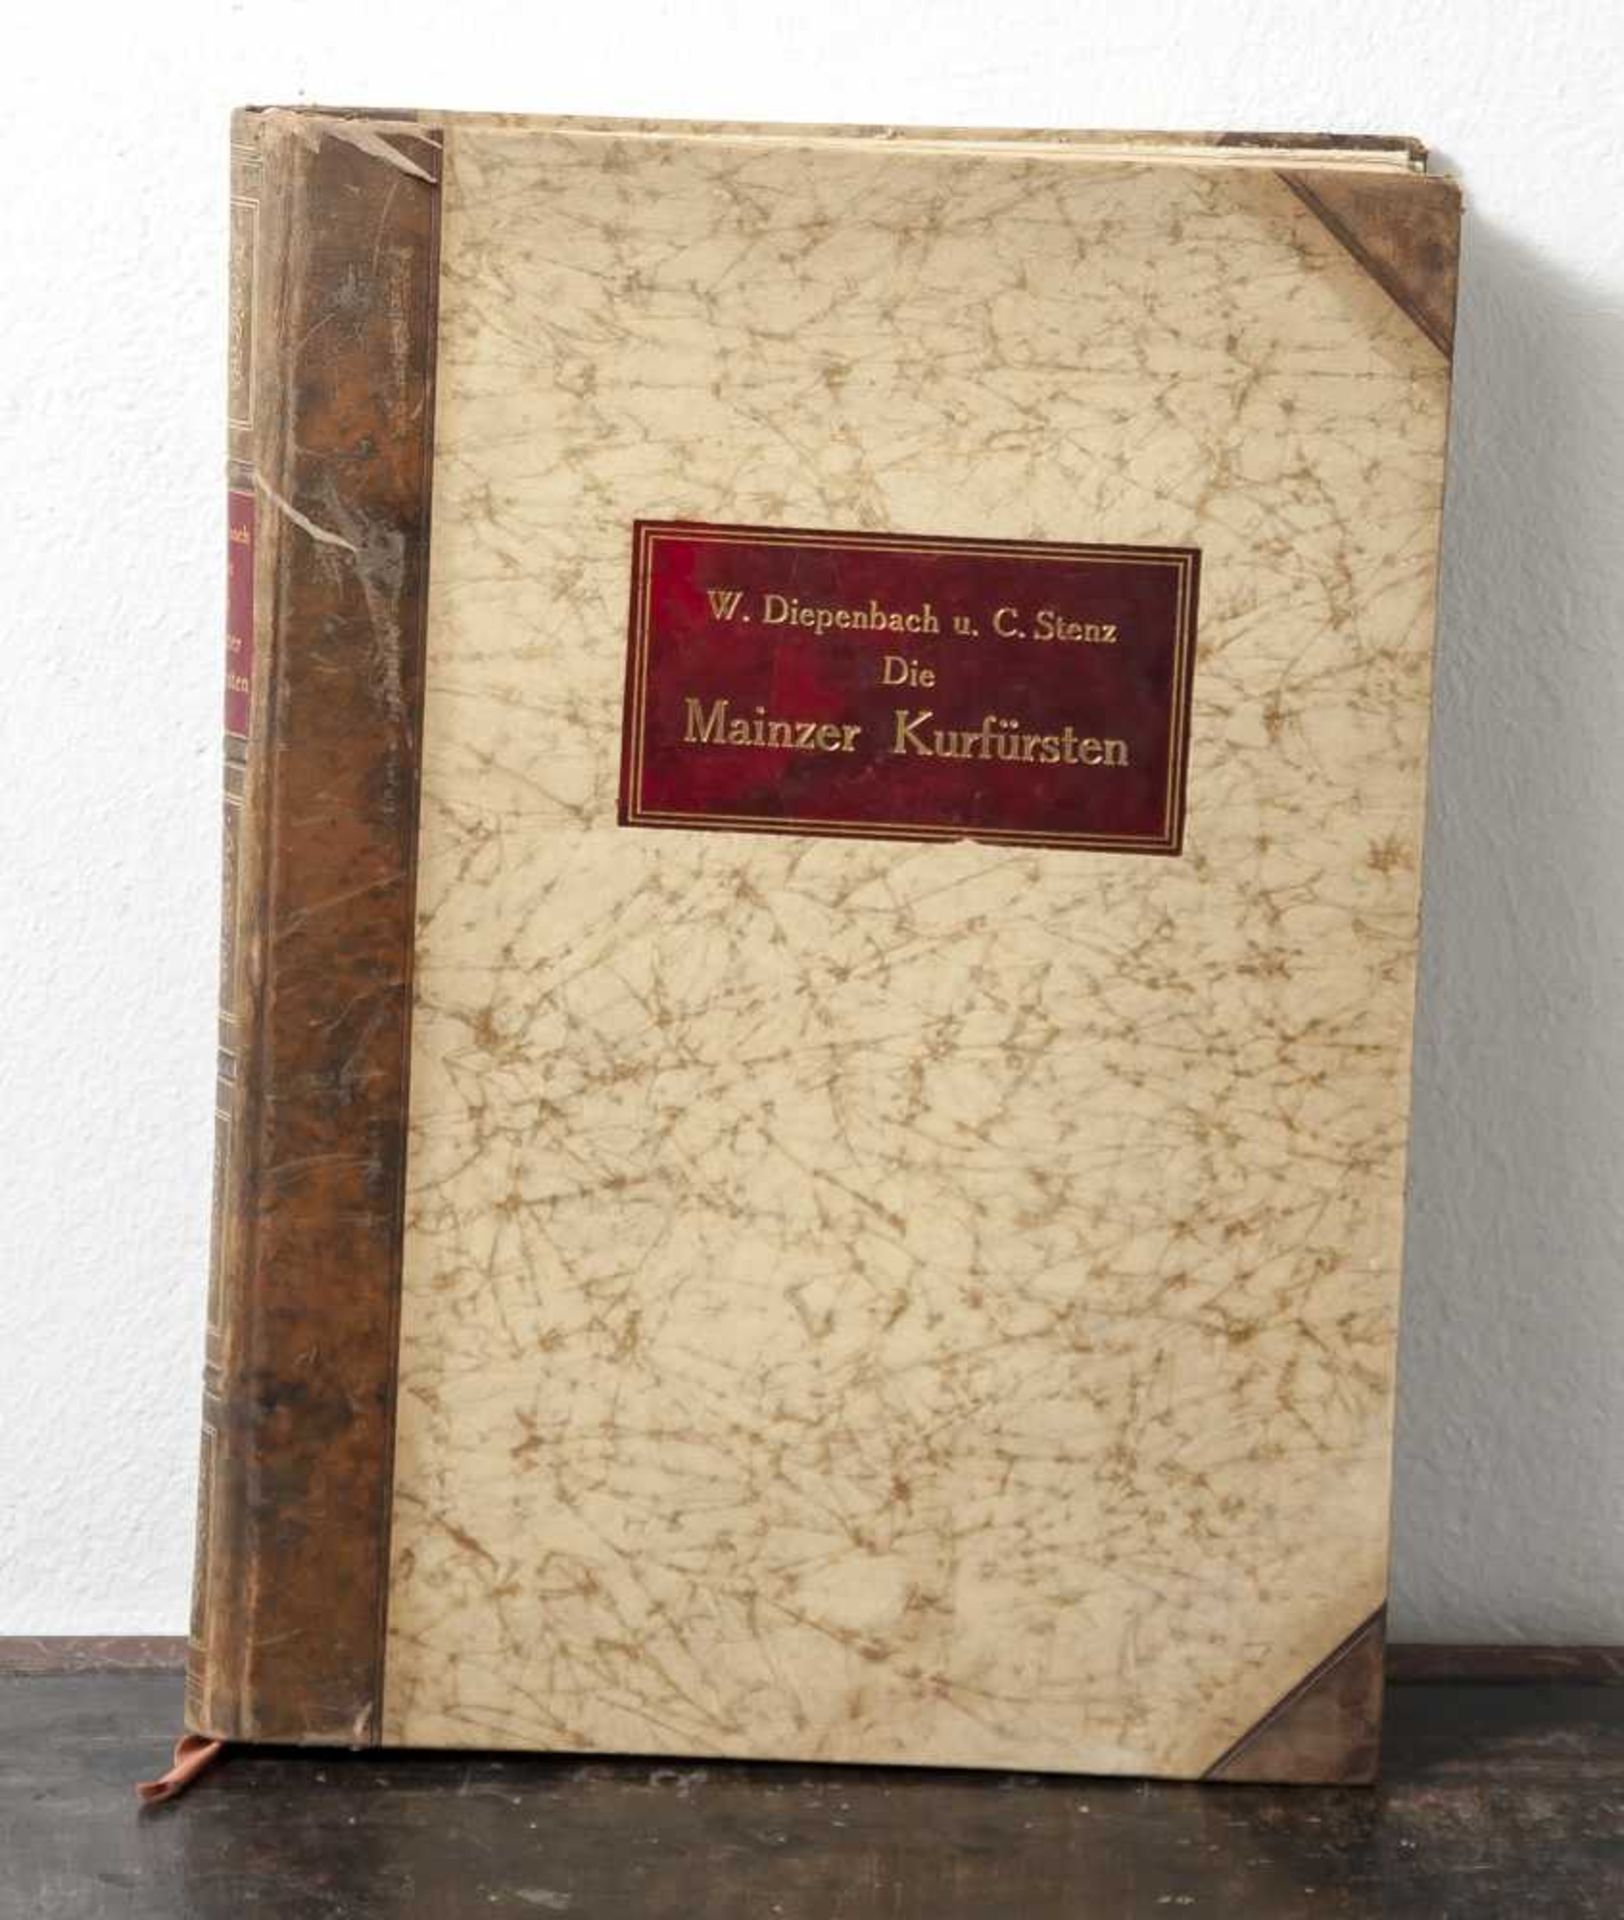 Stenz, Carl "Die Mainzer Kurfürsten", bearbeitet von Wilhelm Diepenbach, Verlag Kirchheim& Co.,